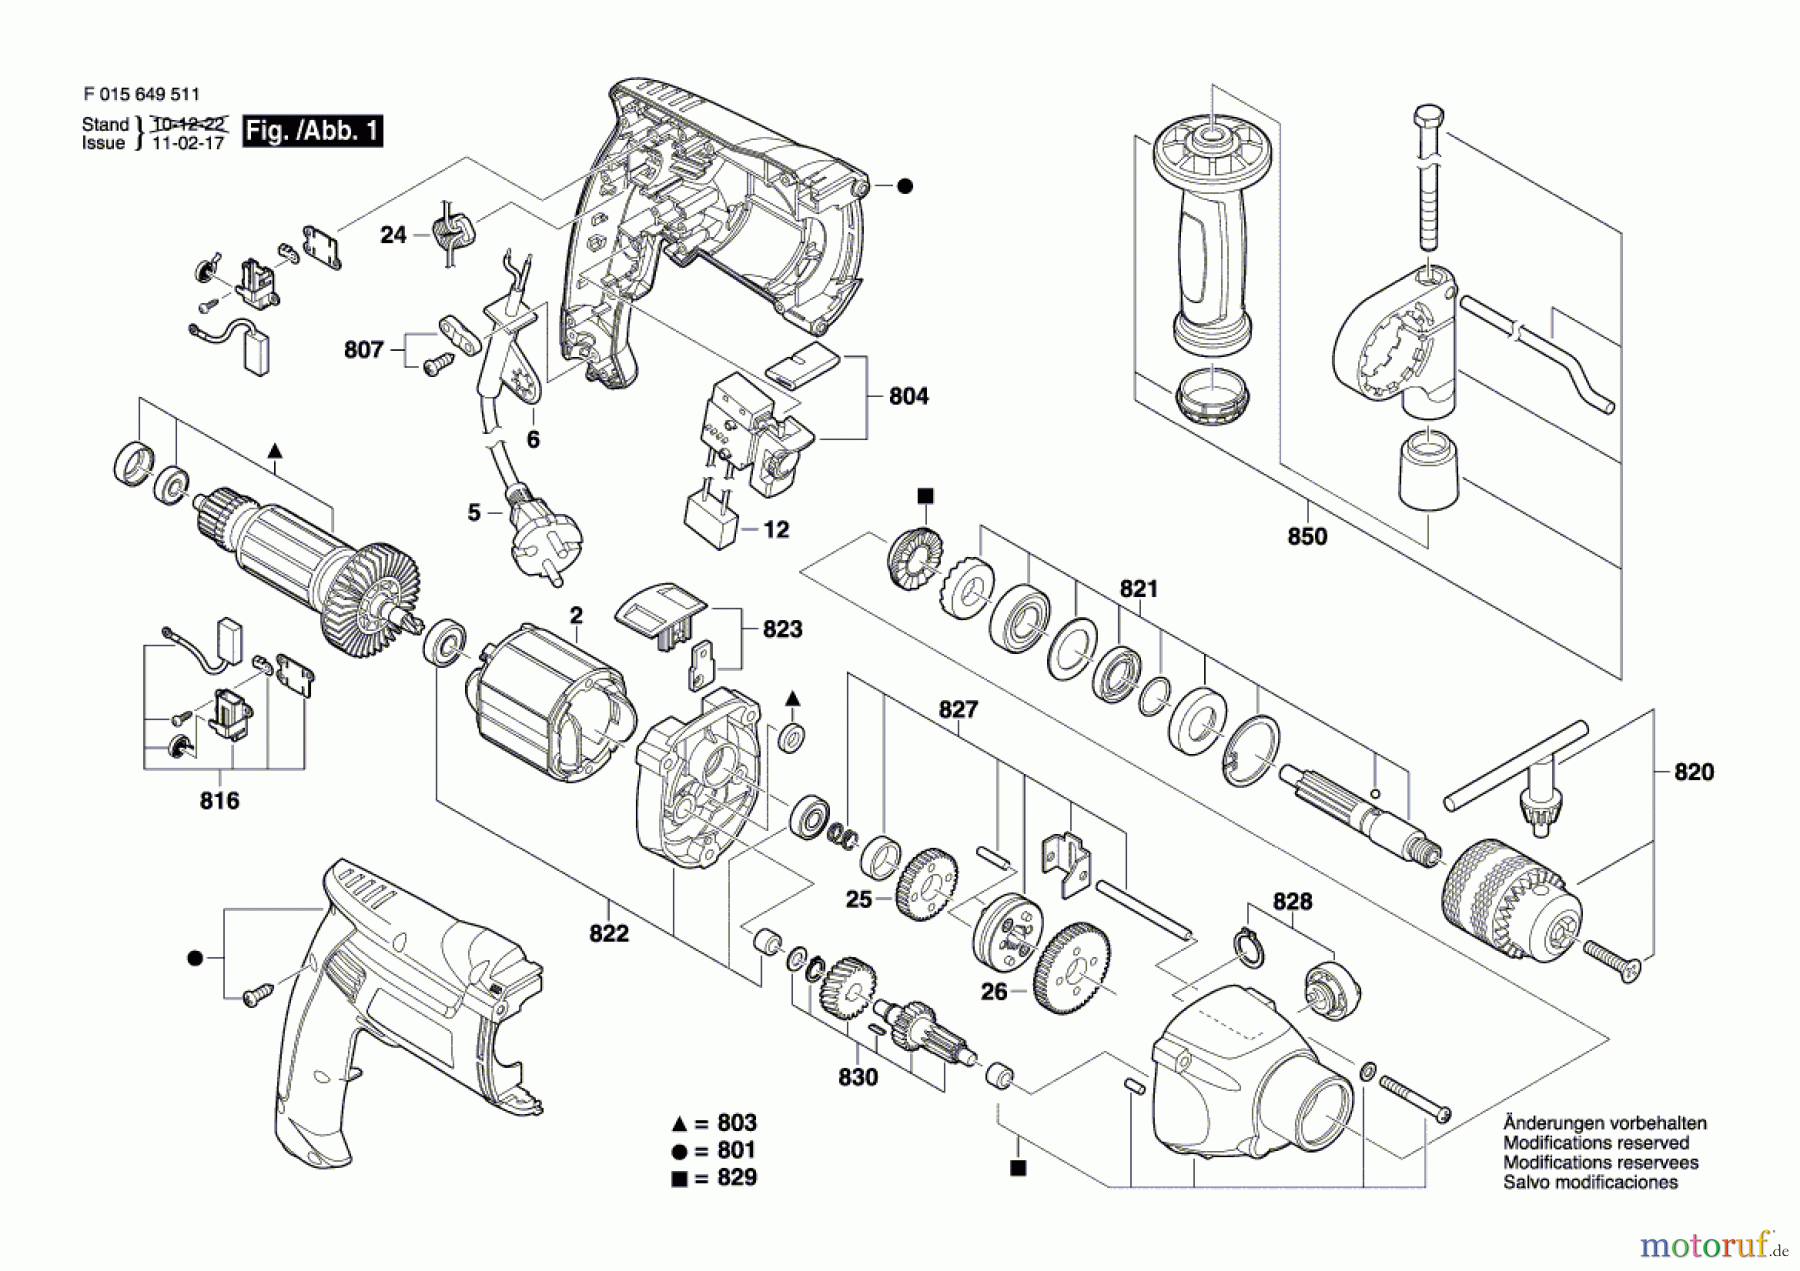  Bosch Werkzeug Schlagbohrmaschine 6495 Seite 1